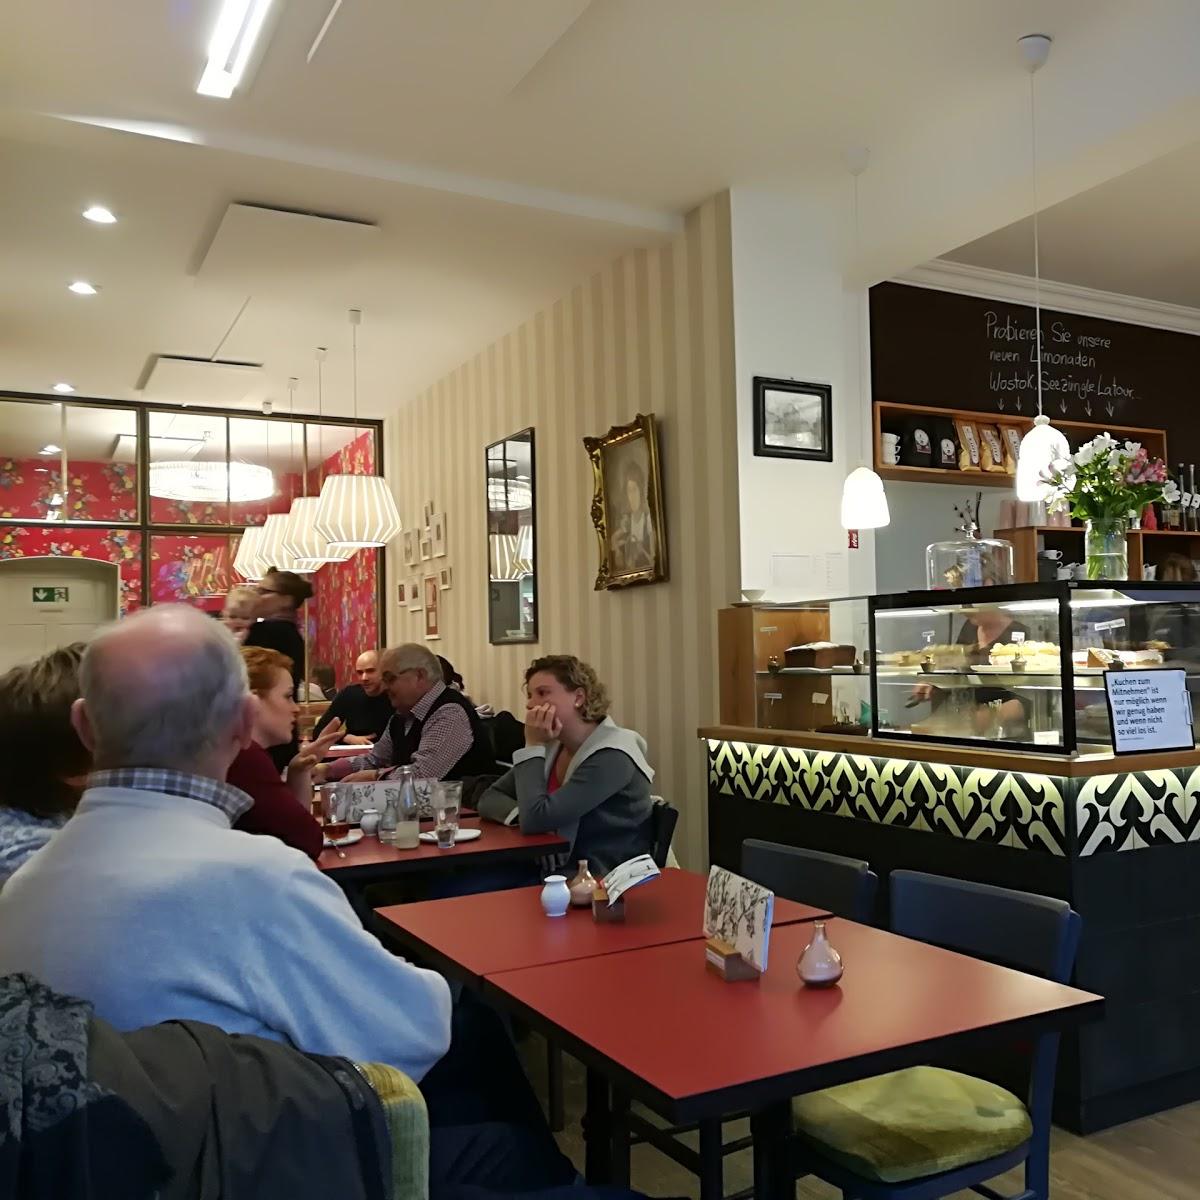 Restaurant "Café Ludwig 1" in Rhodt unter Rietburg